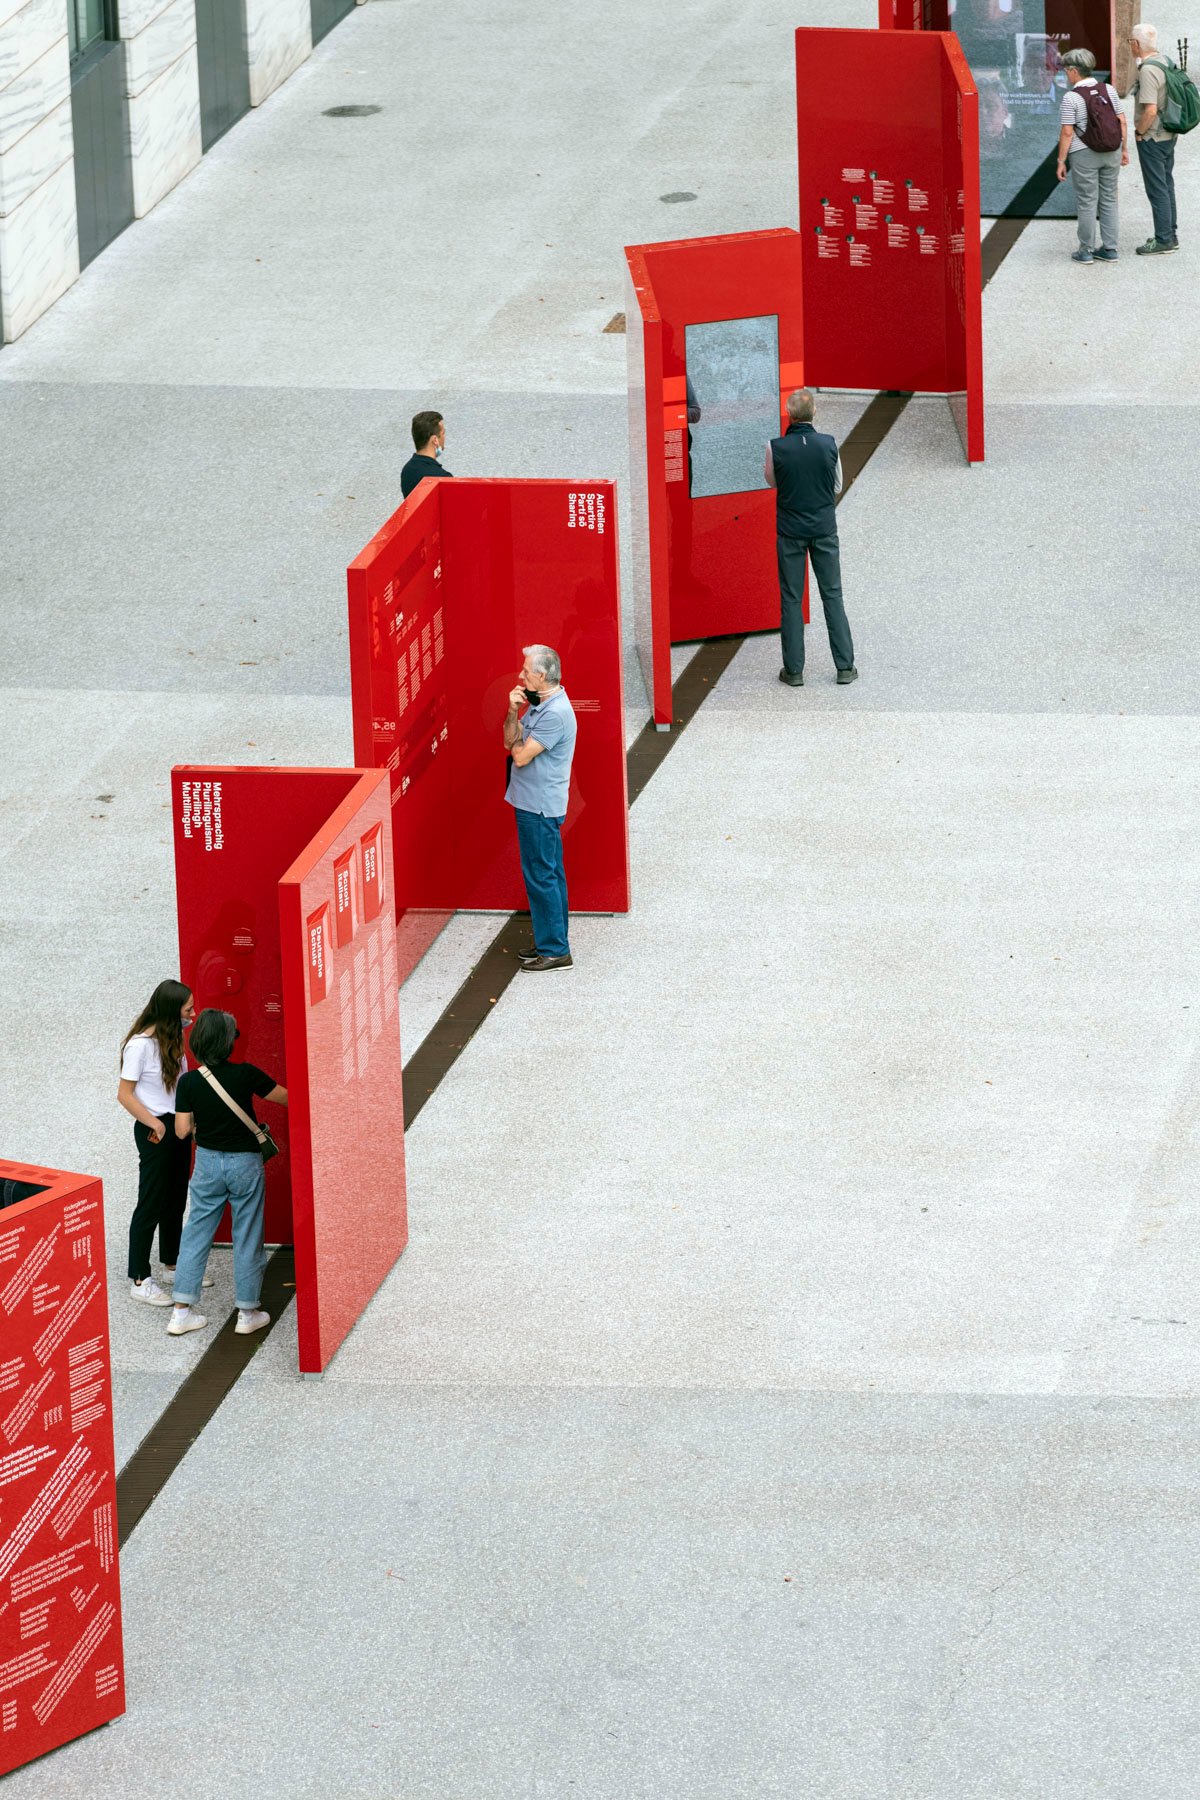 Die Besucher des Ausstellungsparcours zur Südtiroler Autonomie auf dem Silvius-Magnago-Platz in Bozen.